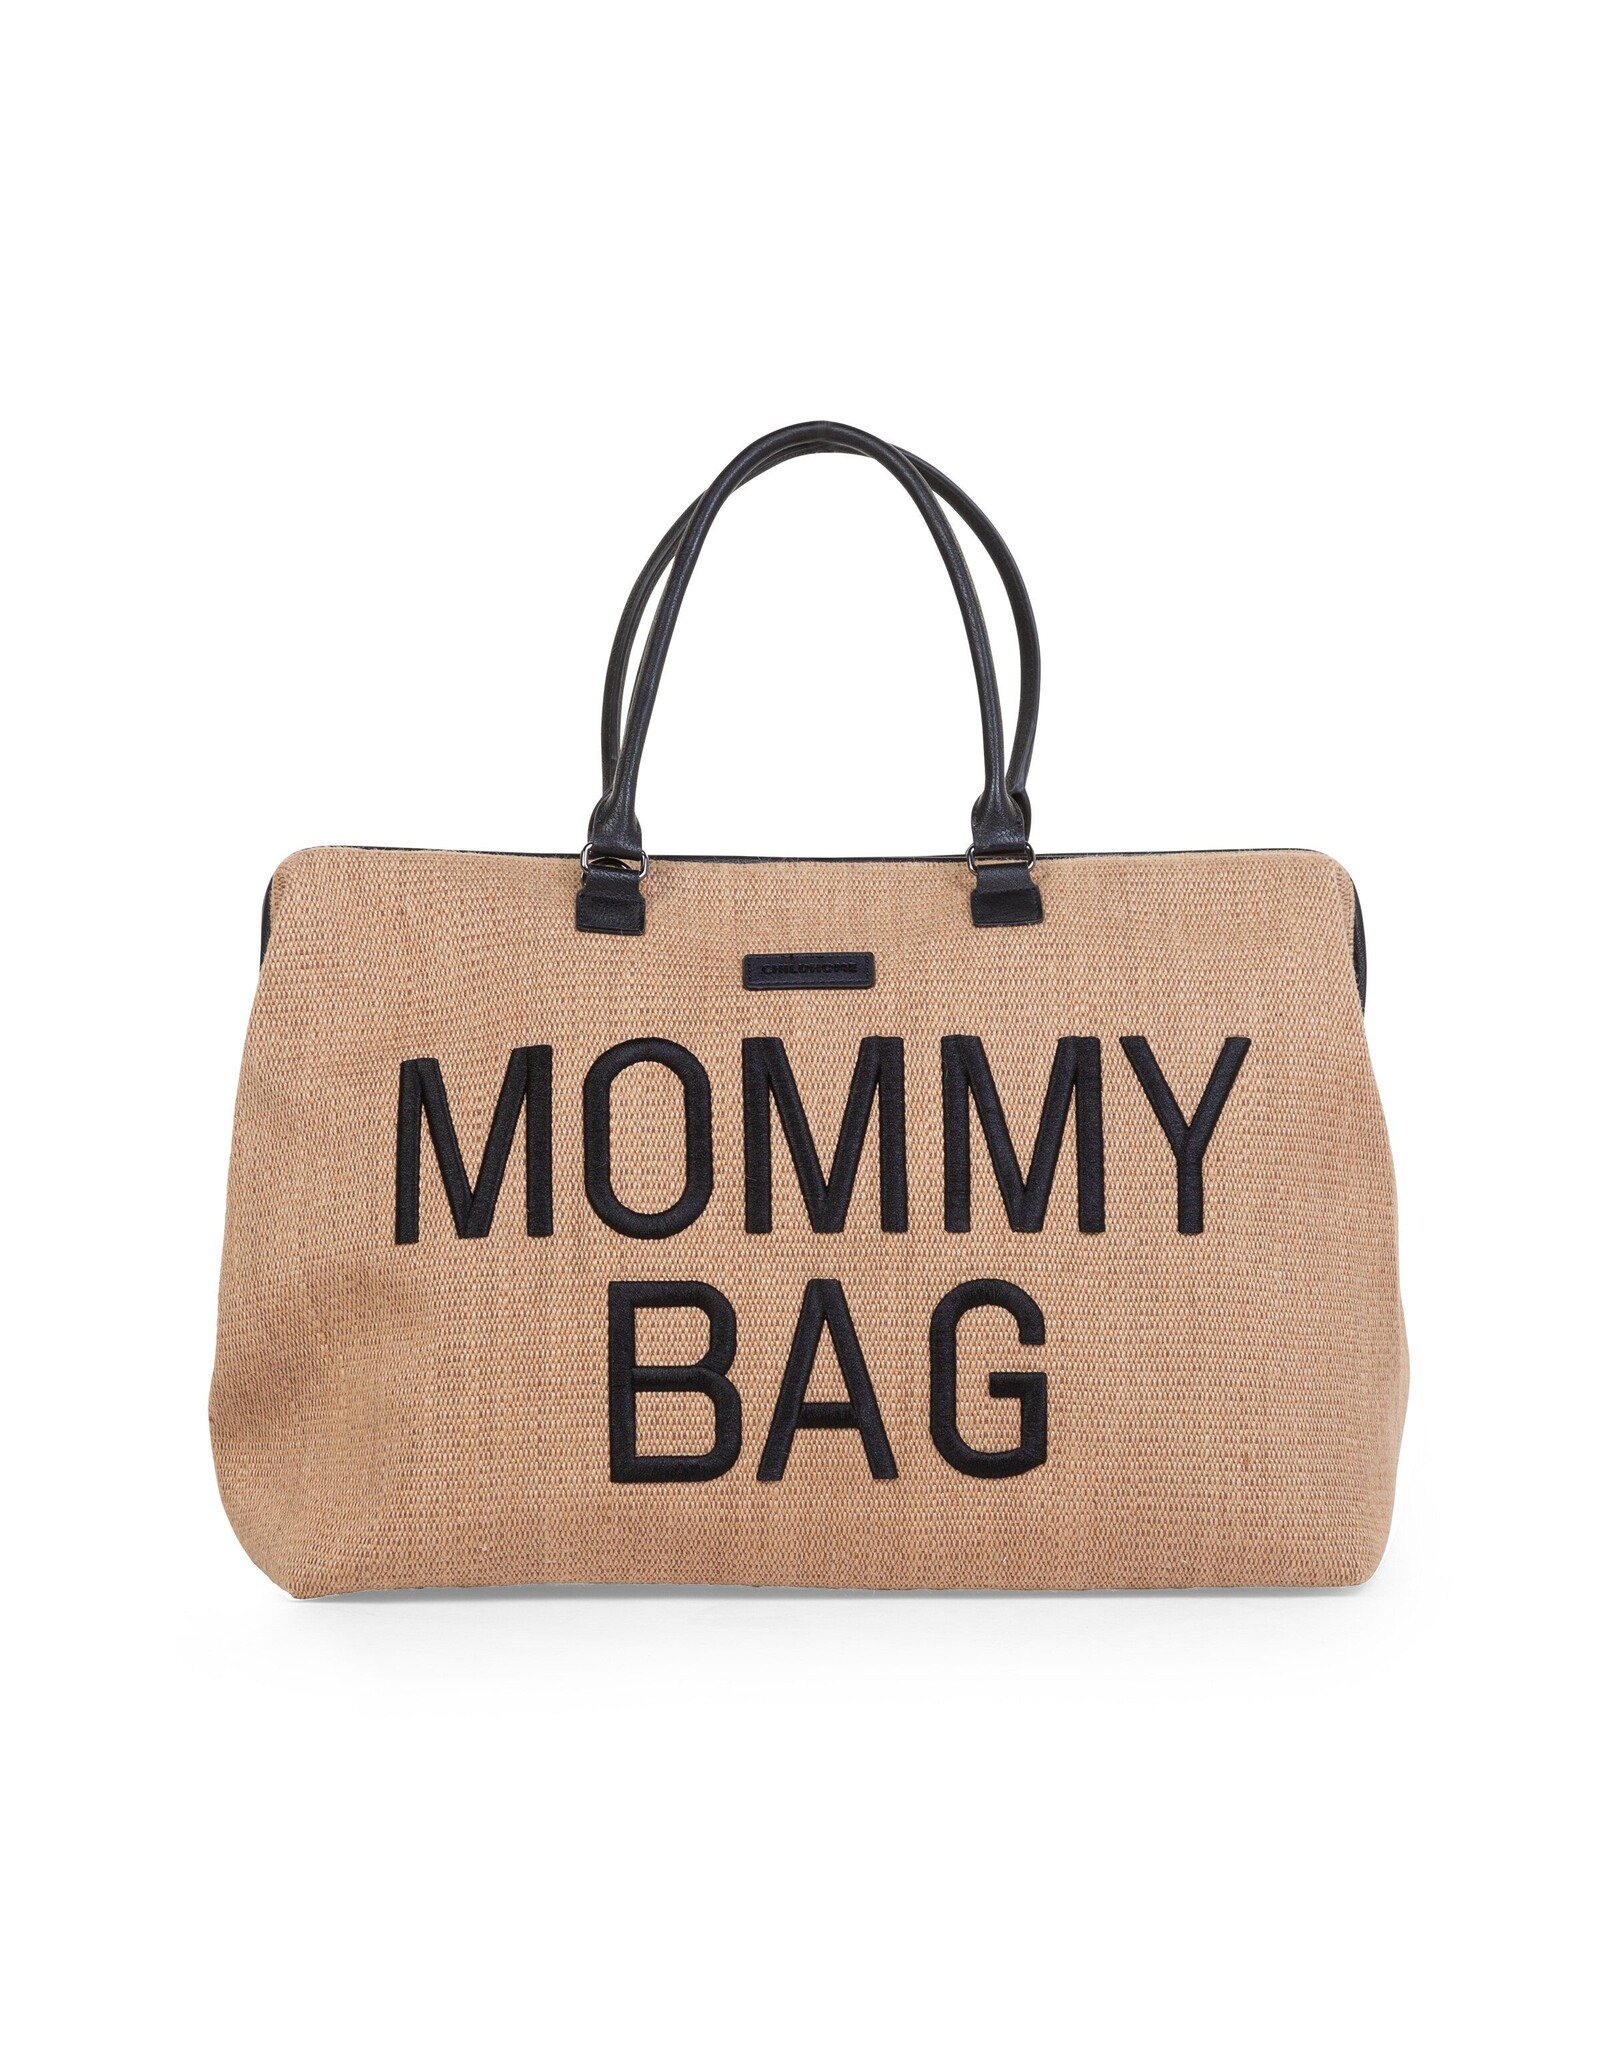 Mommy bag - raphia